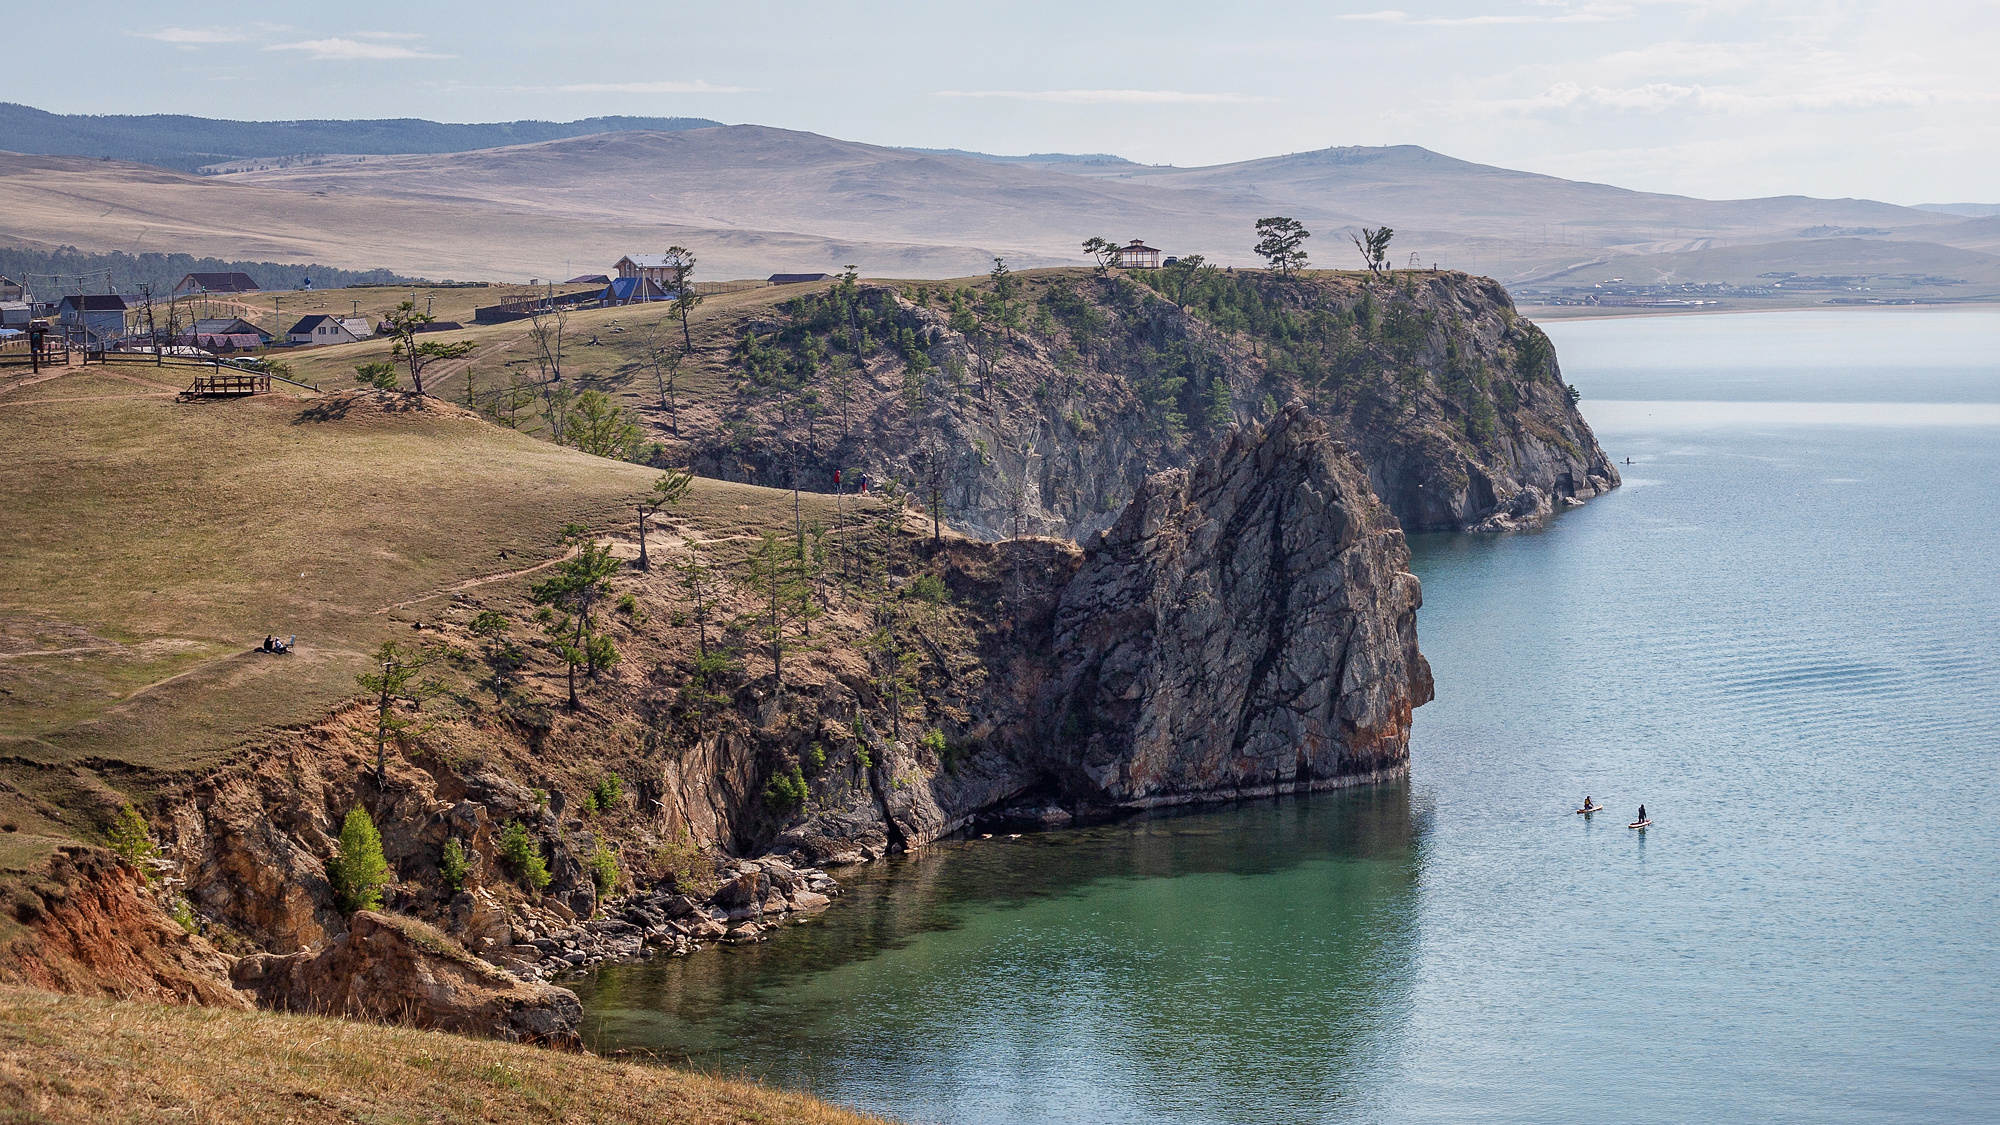 «Берега Байкала загажены палаточными лагерями»: эксперт высказалась о летнем отдыхе на озере